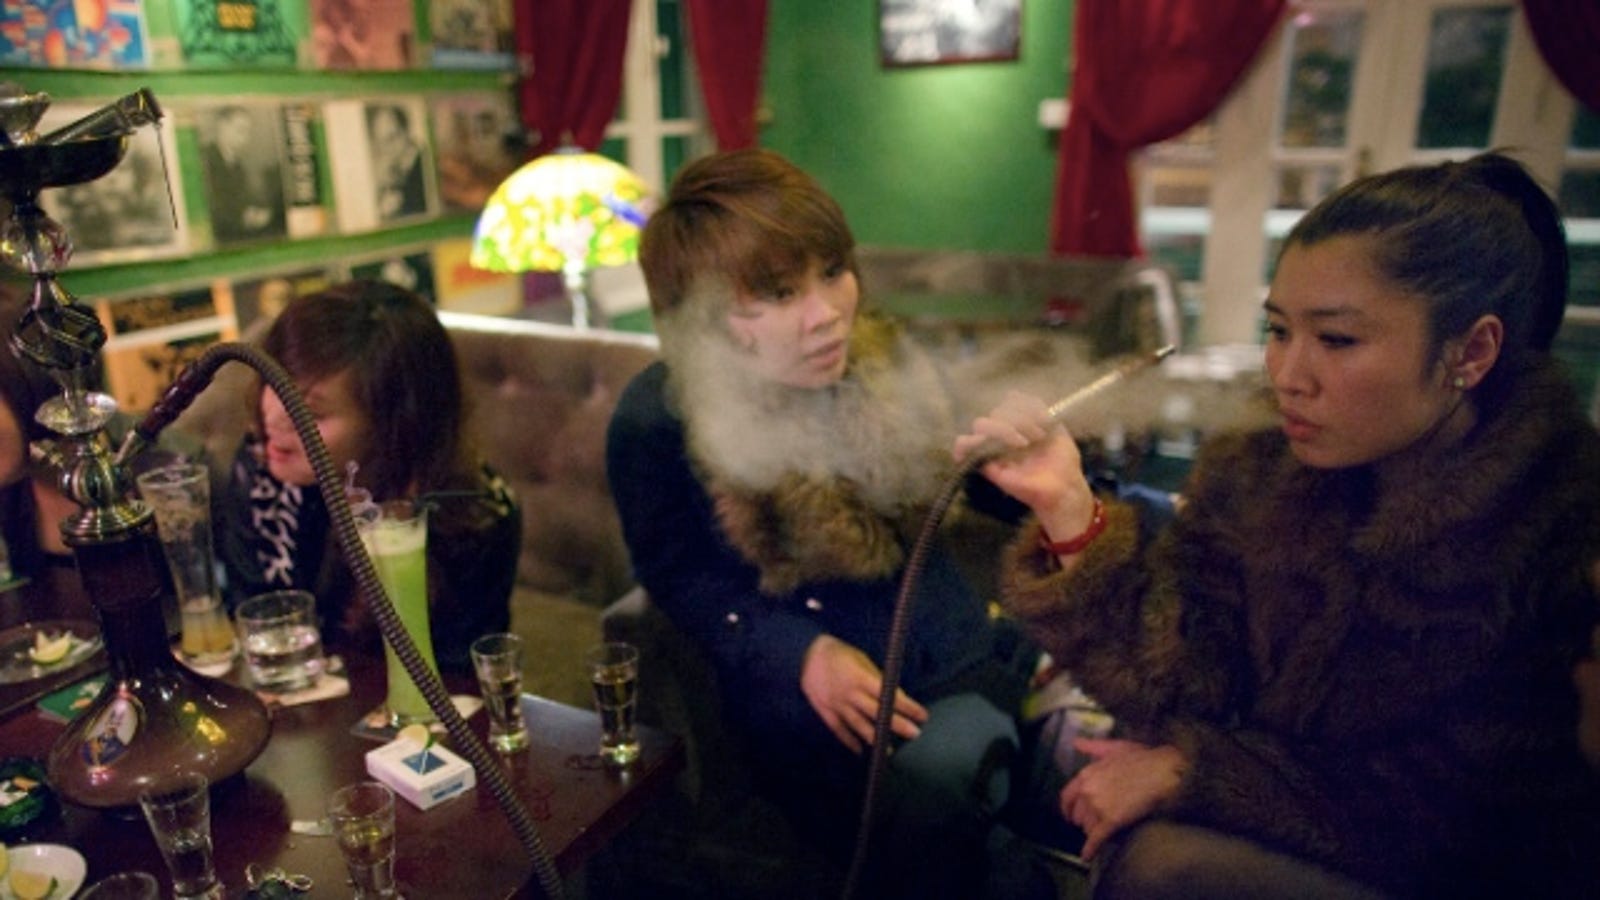 Vietnamese Girls Smoking Drinking Being Badass